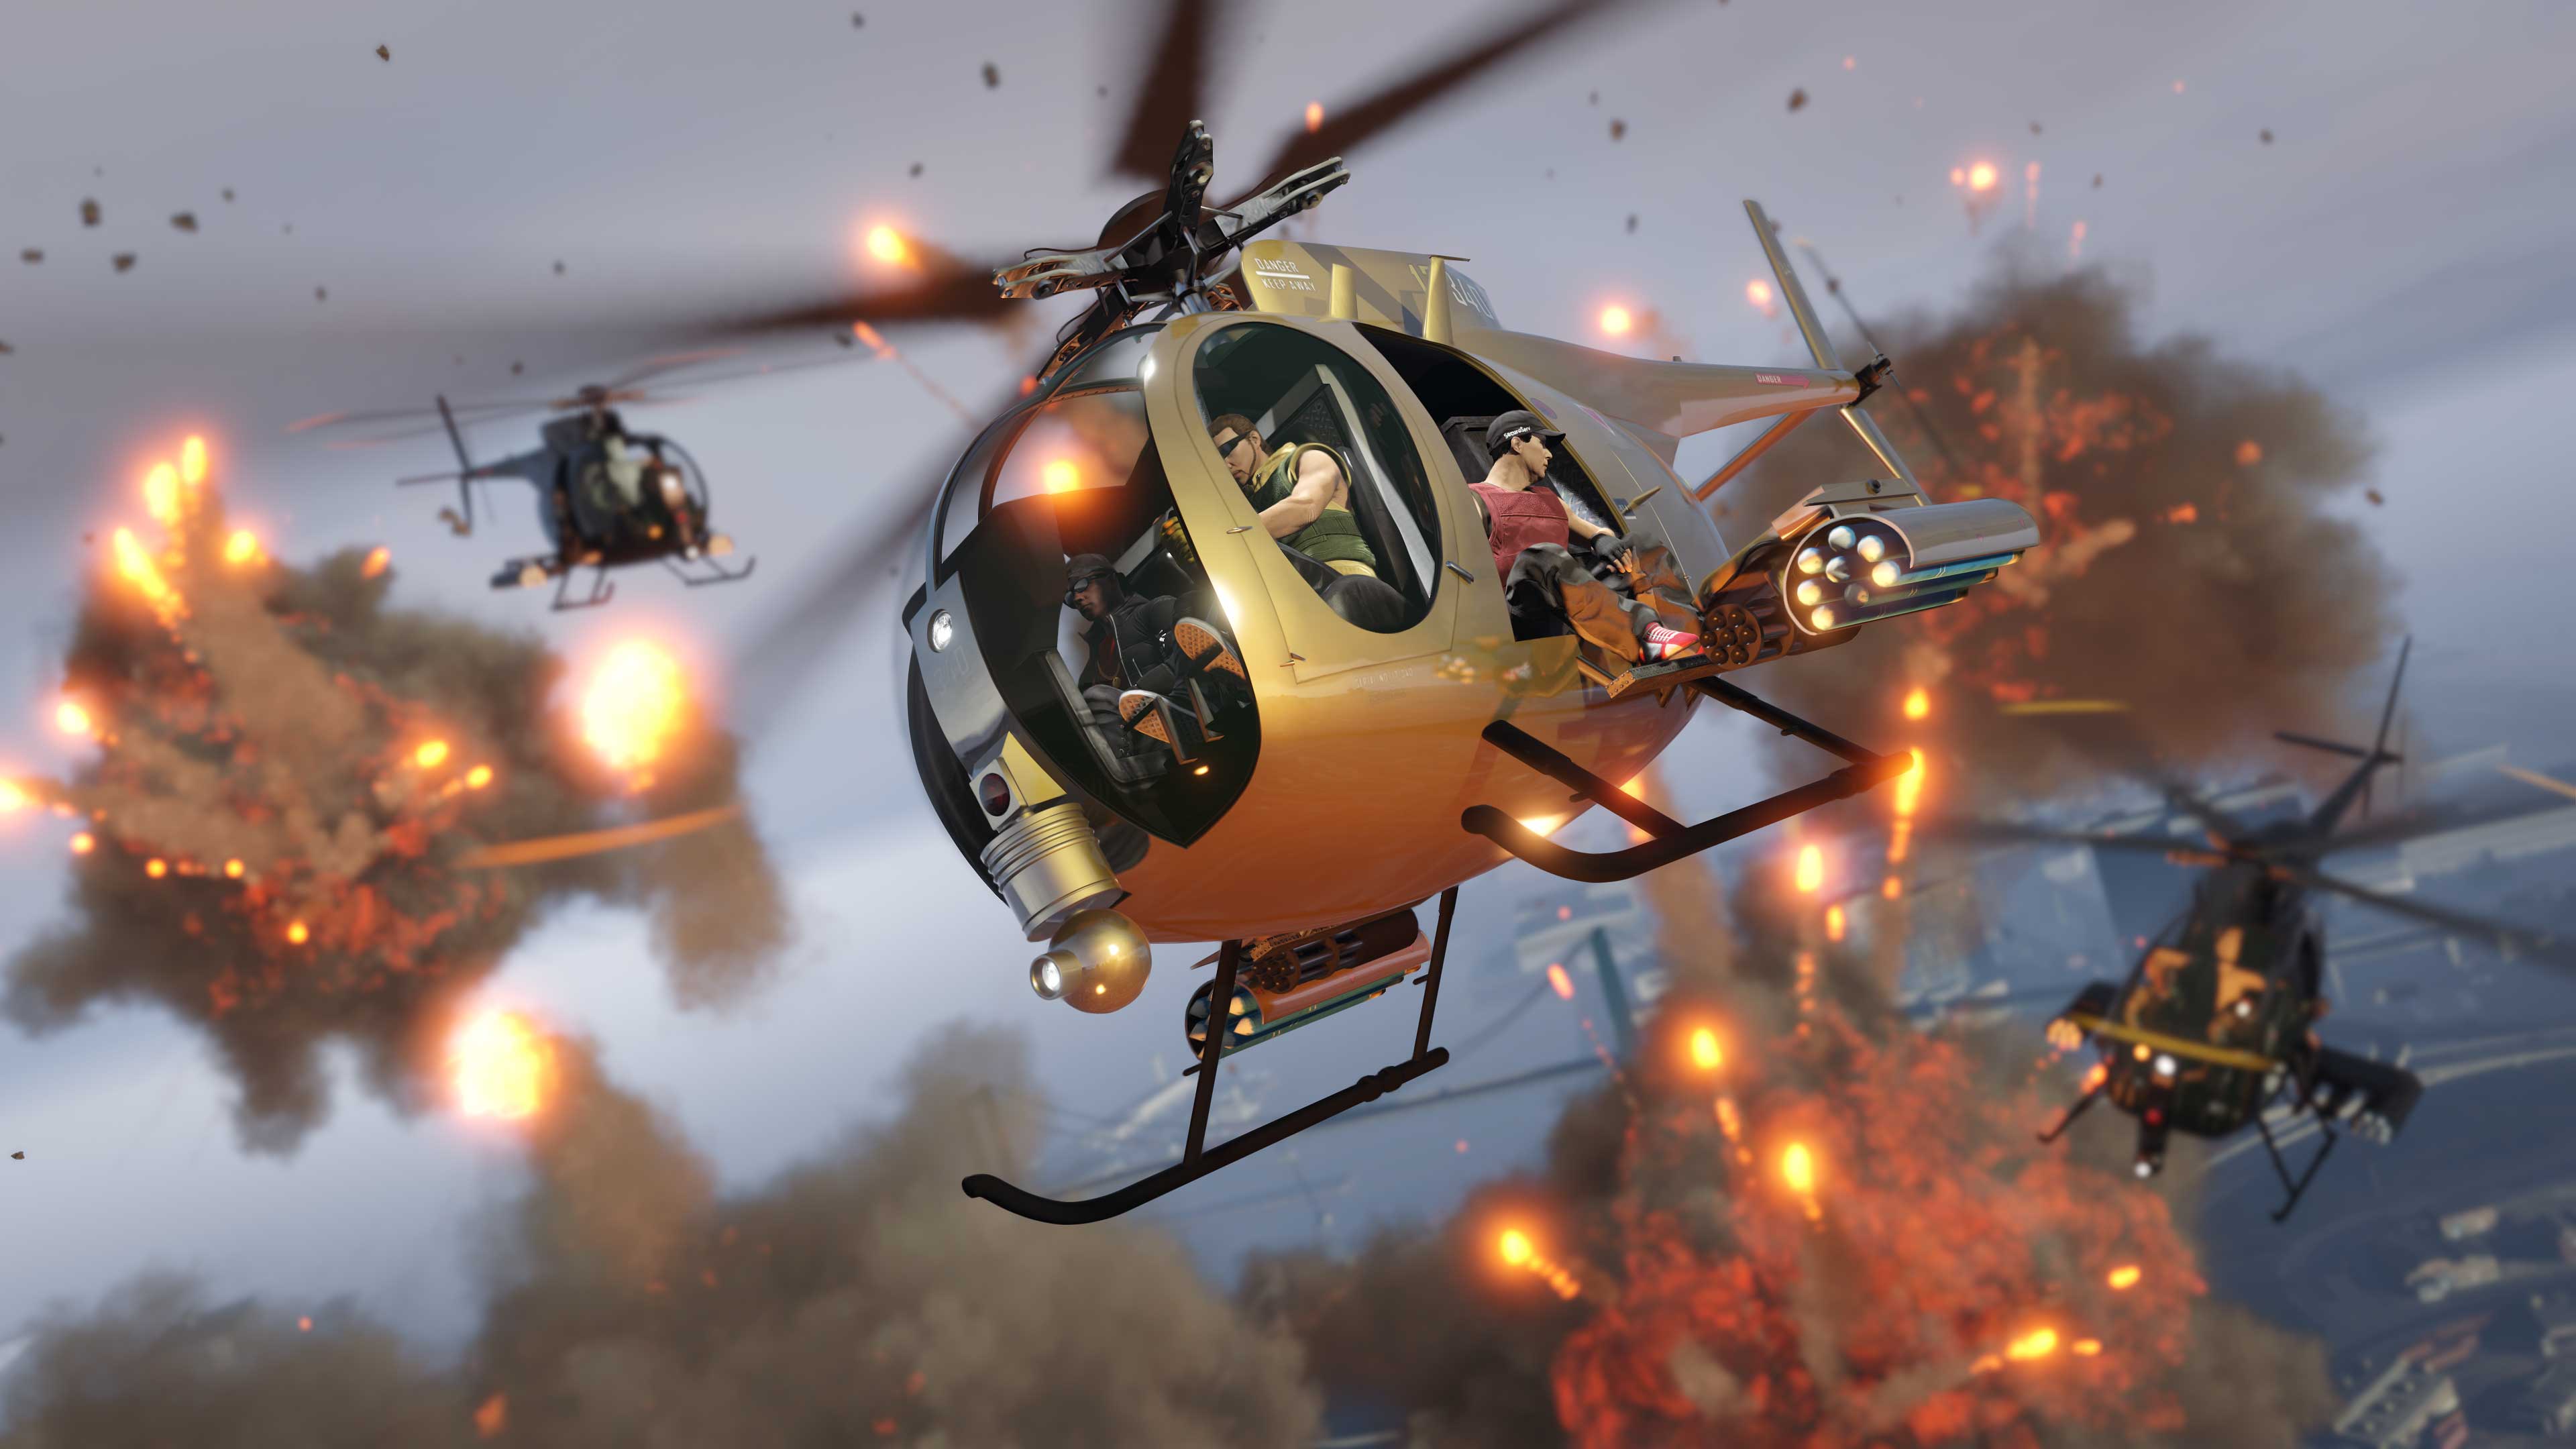 Buzzard de Ataque Dourado voando sobre outros helicópteros e explosões no ar.